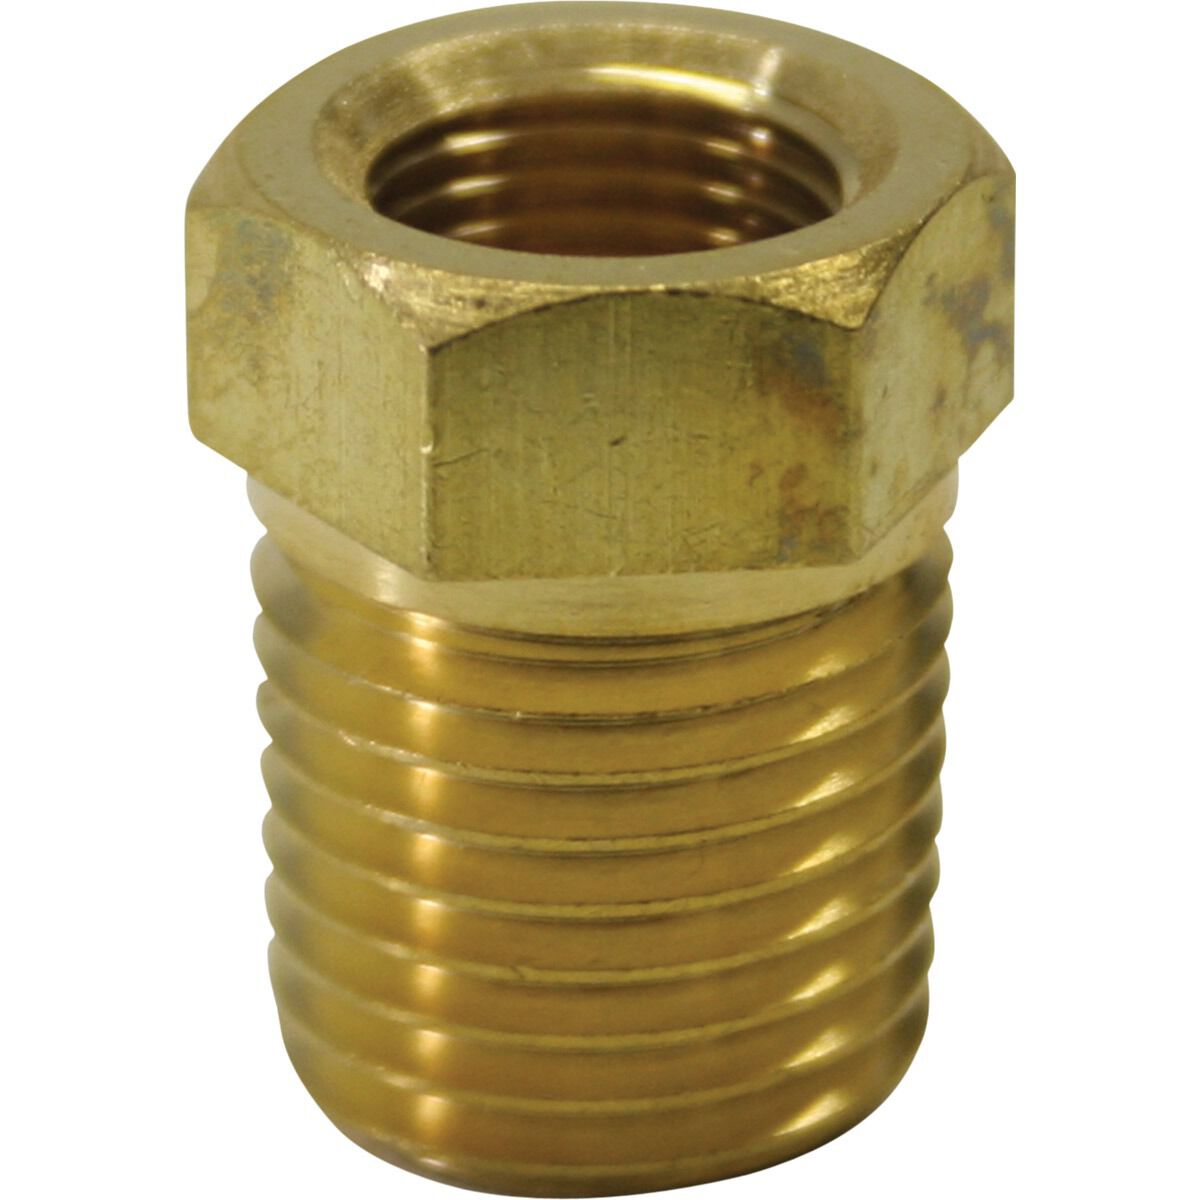 Gauge Adaptor Brass, CAL32005, , scaau_hi-res